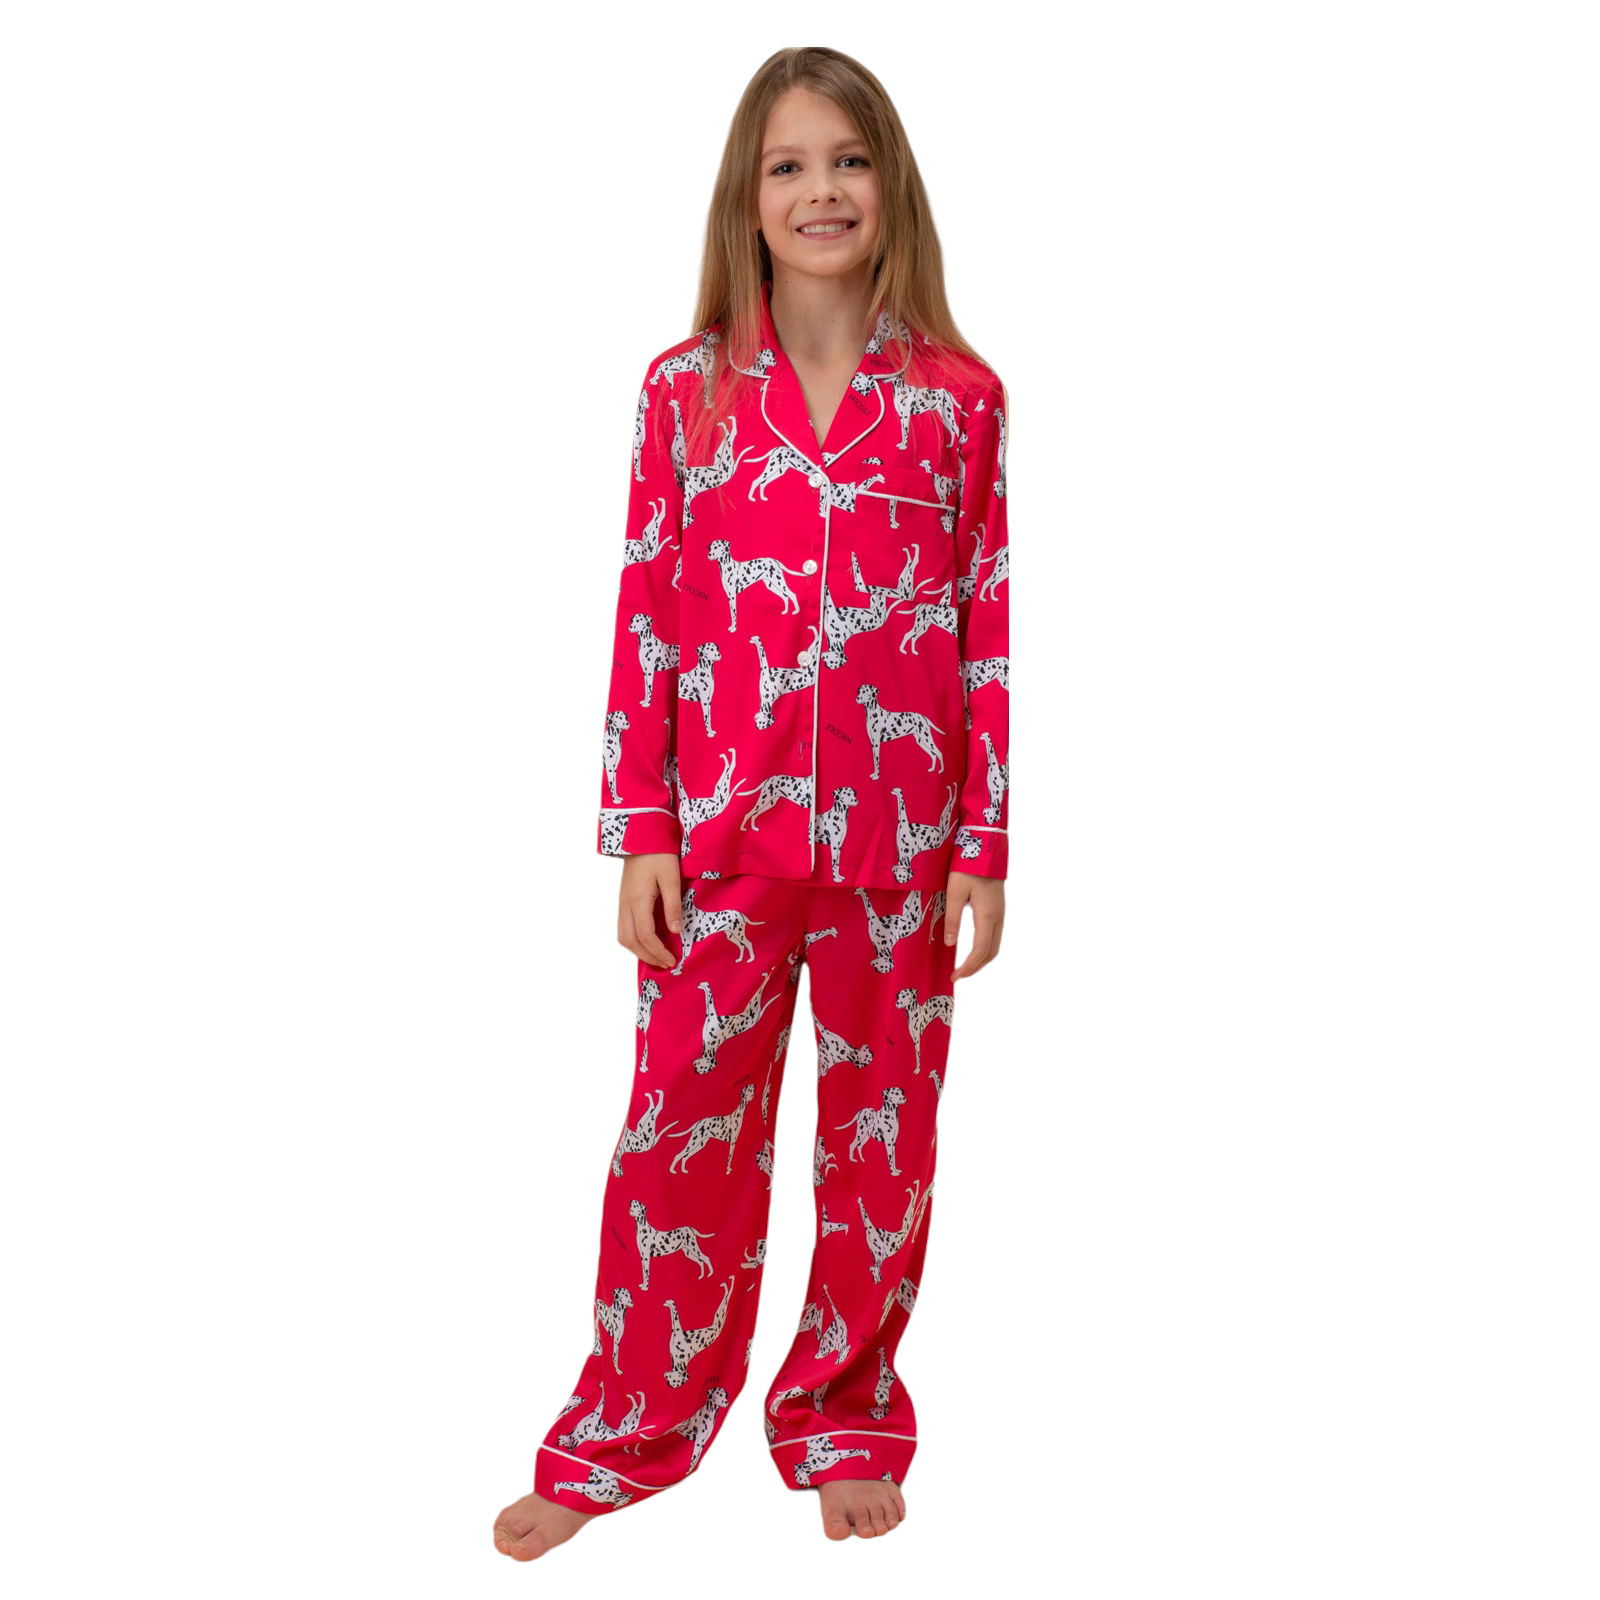 Пижама детская Nicole Home Барби цветная размер 110 P7Z20P110dog детская ревность практический курс для родителей